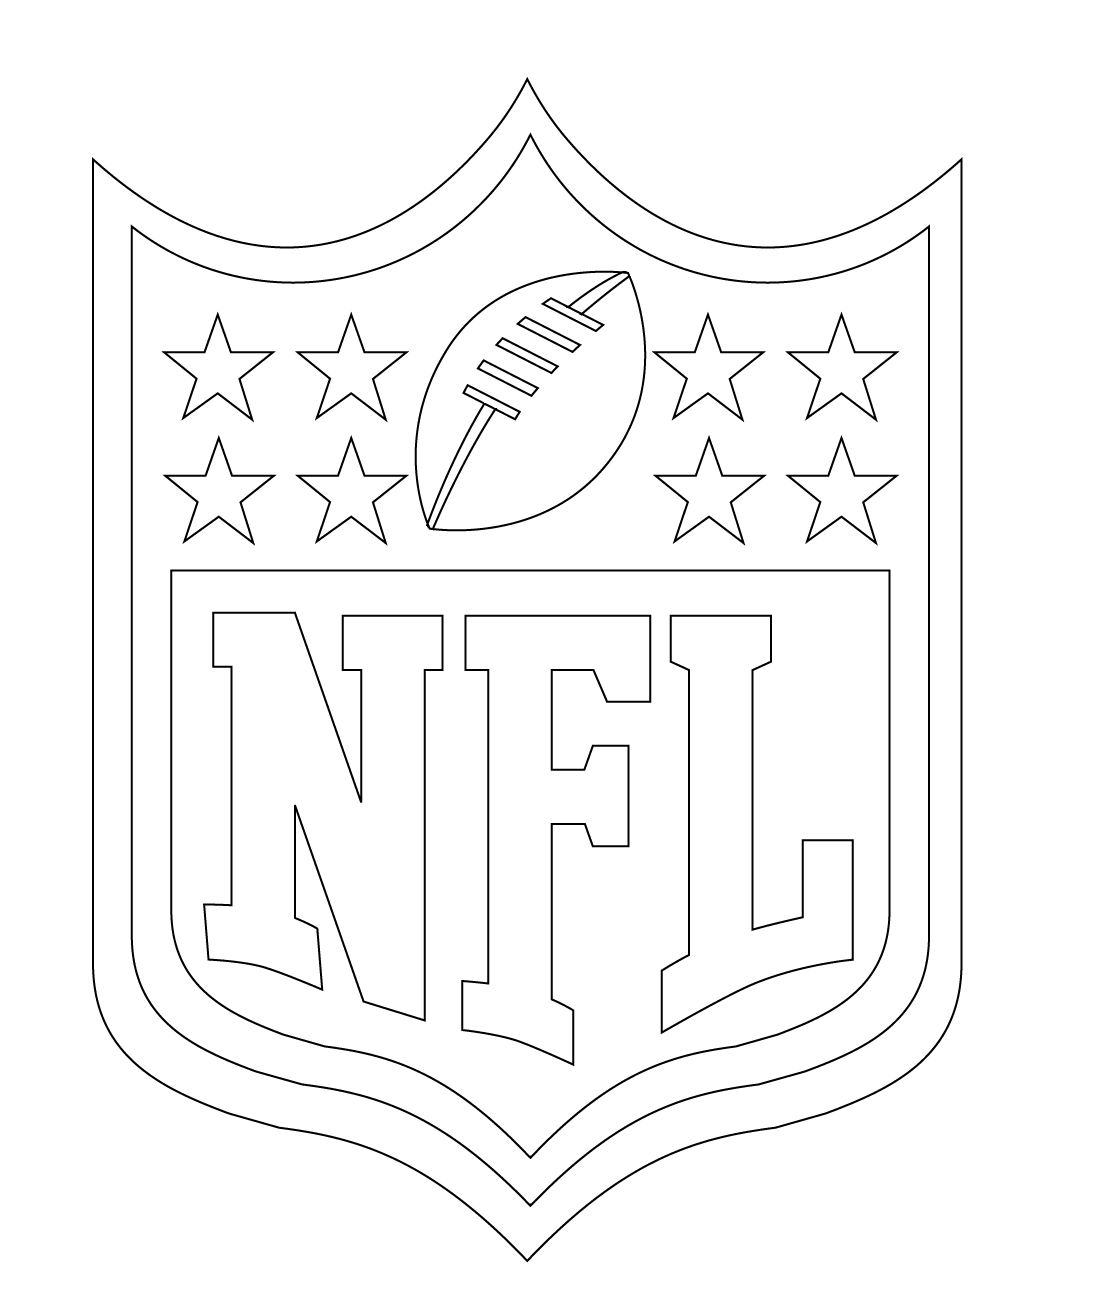 Logo de la NFL